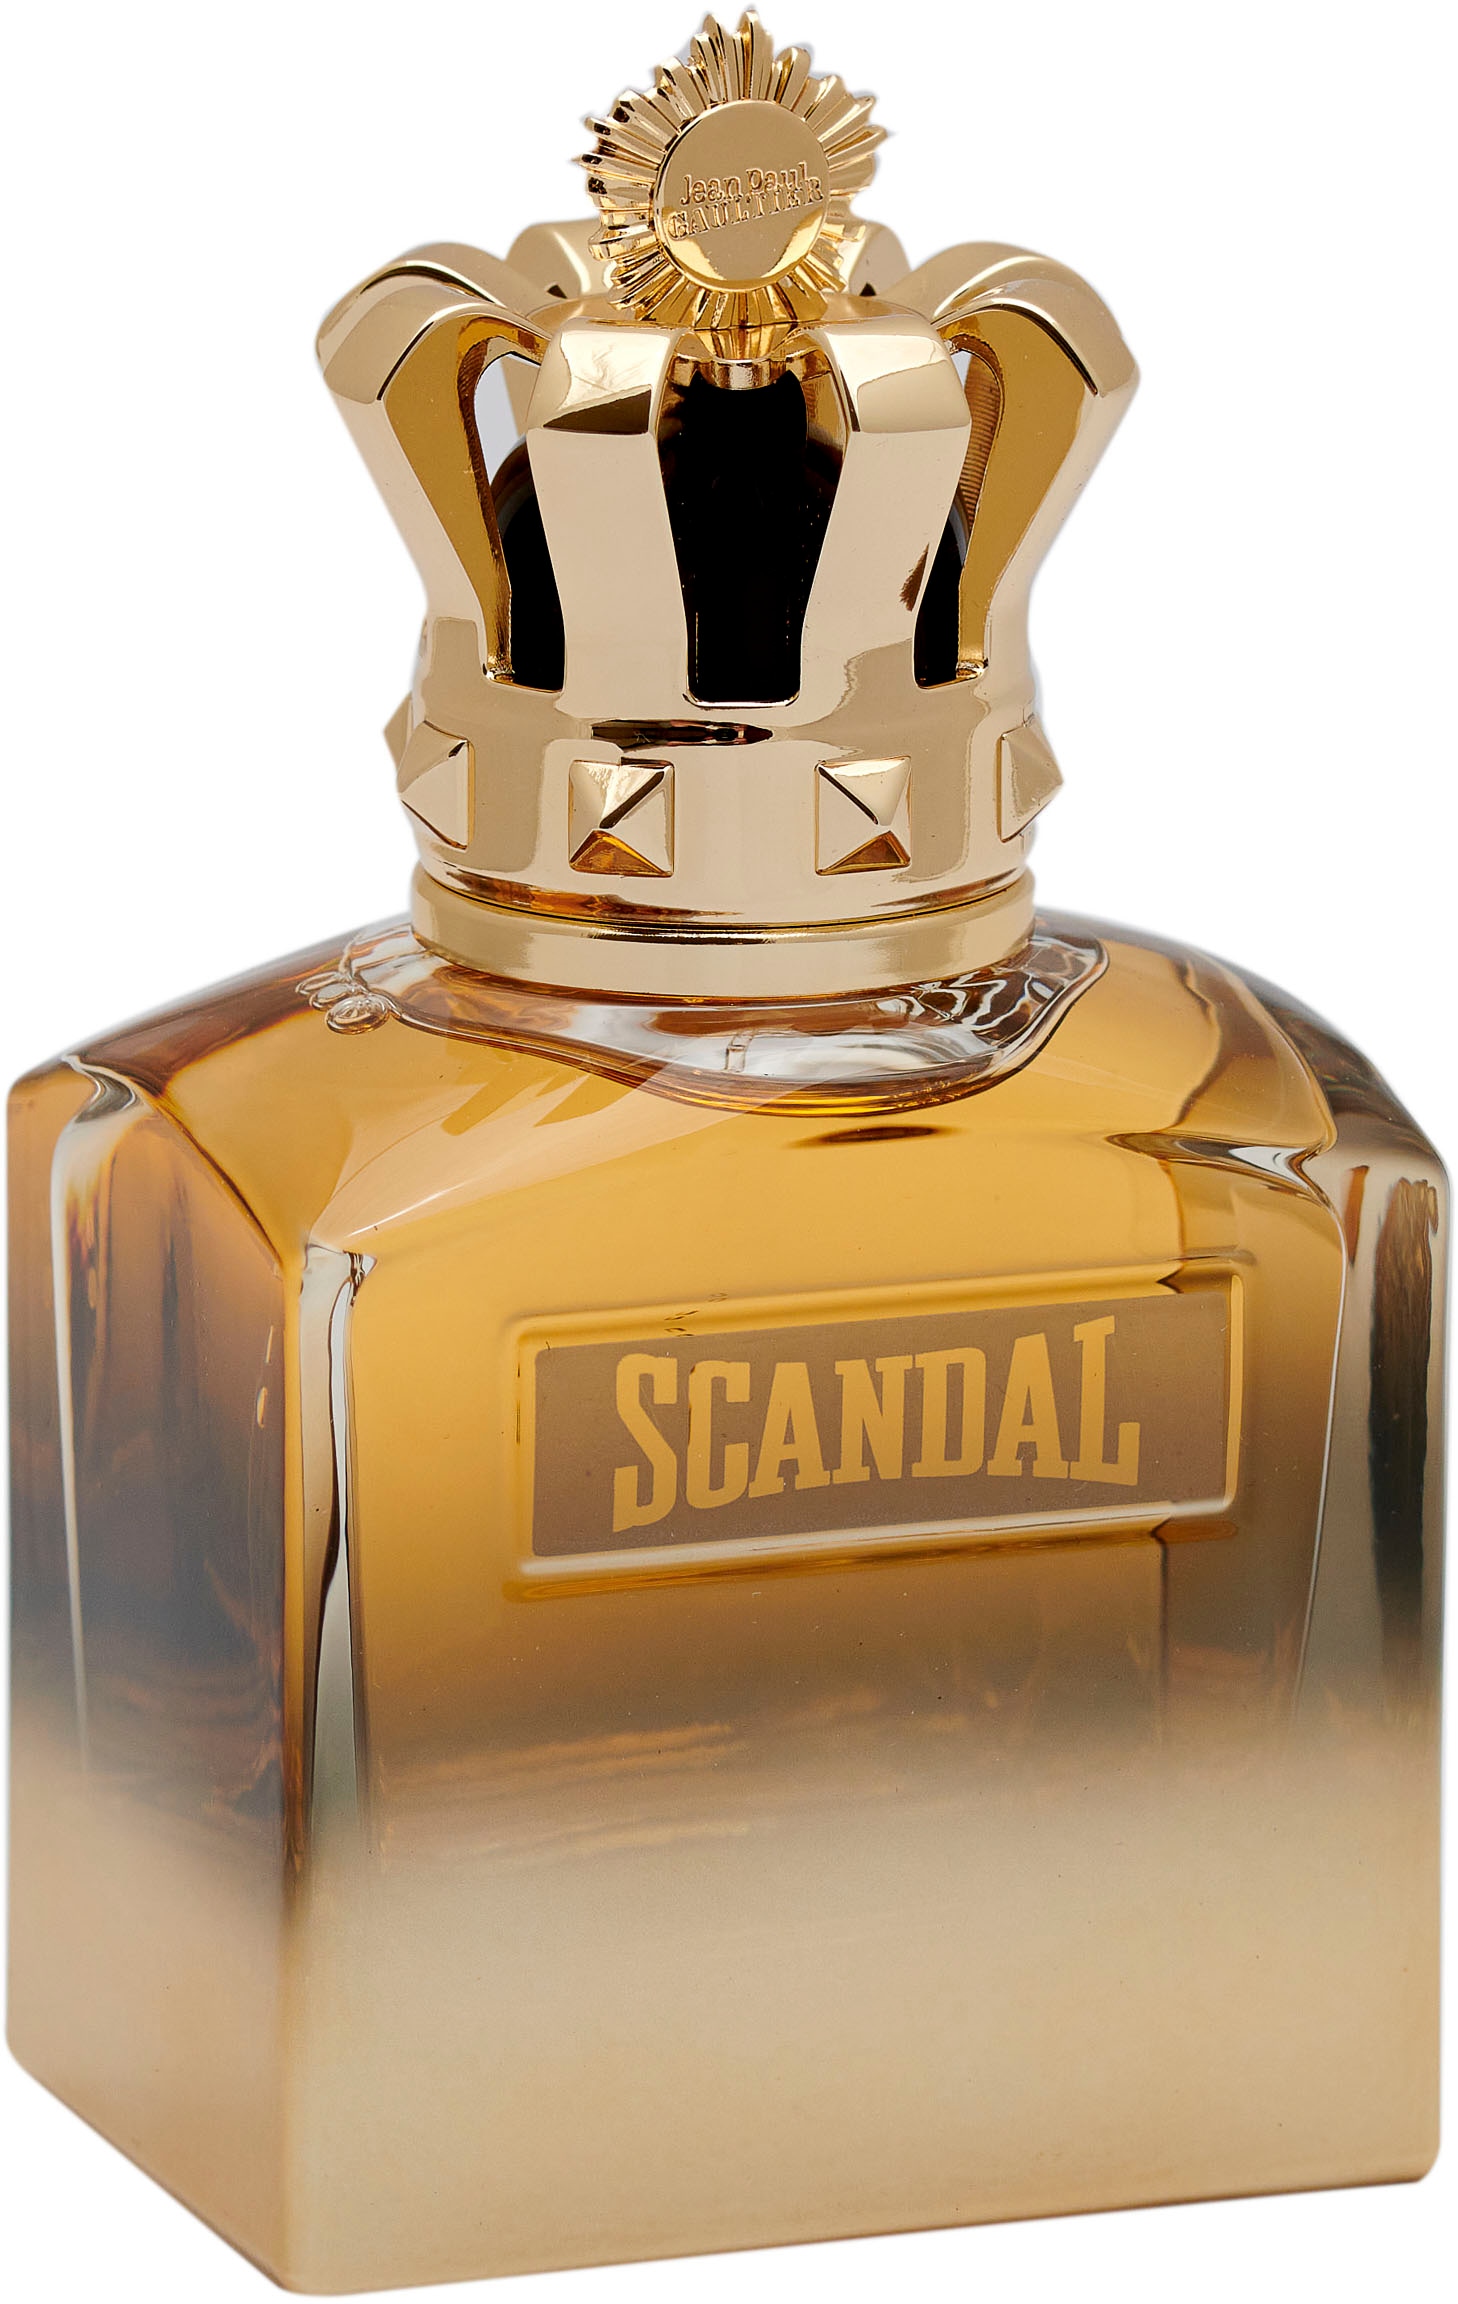 JEAN PAUL GAULTIER Extrait Parfum »Jean Paul Gautier Scandal pour Homme Absolut Parfum Concentré«, (1 tlg.)